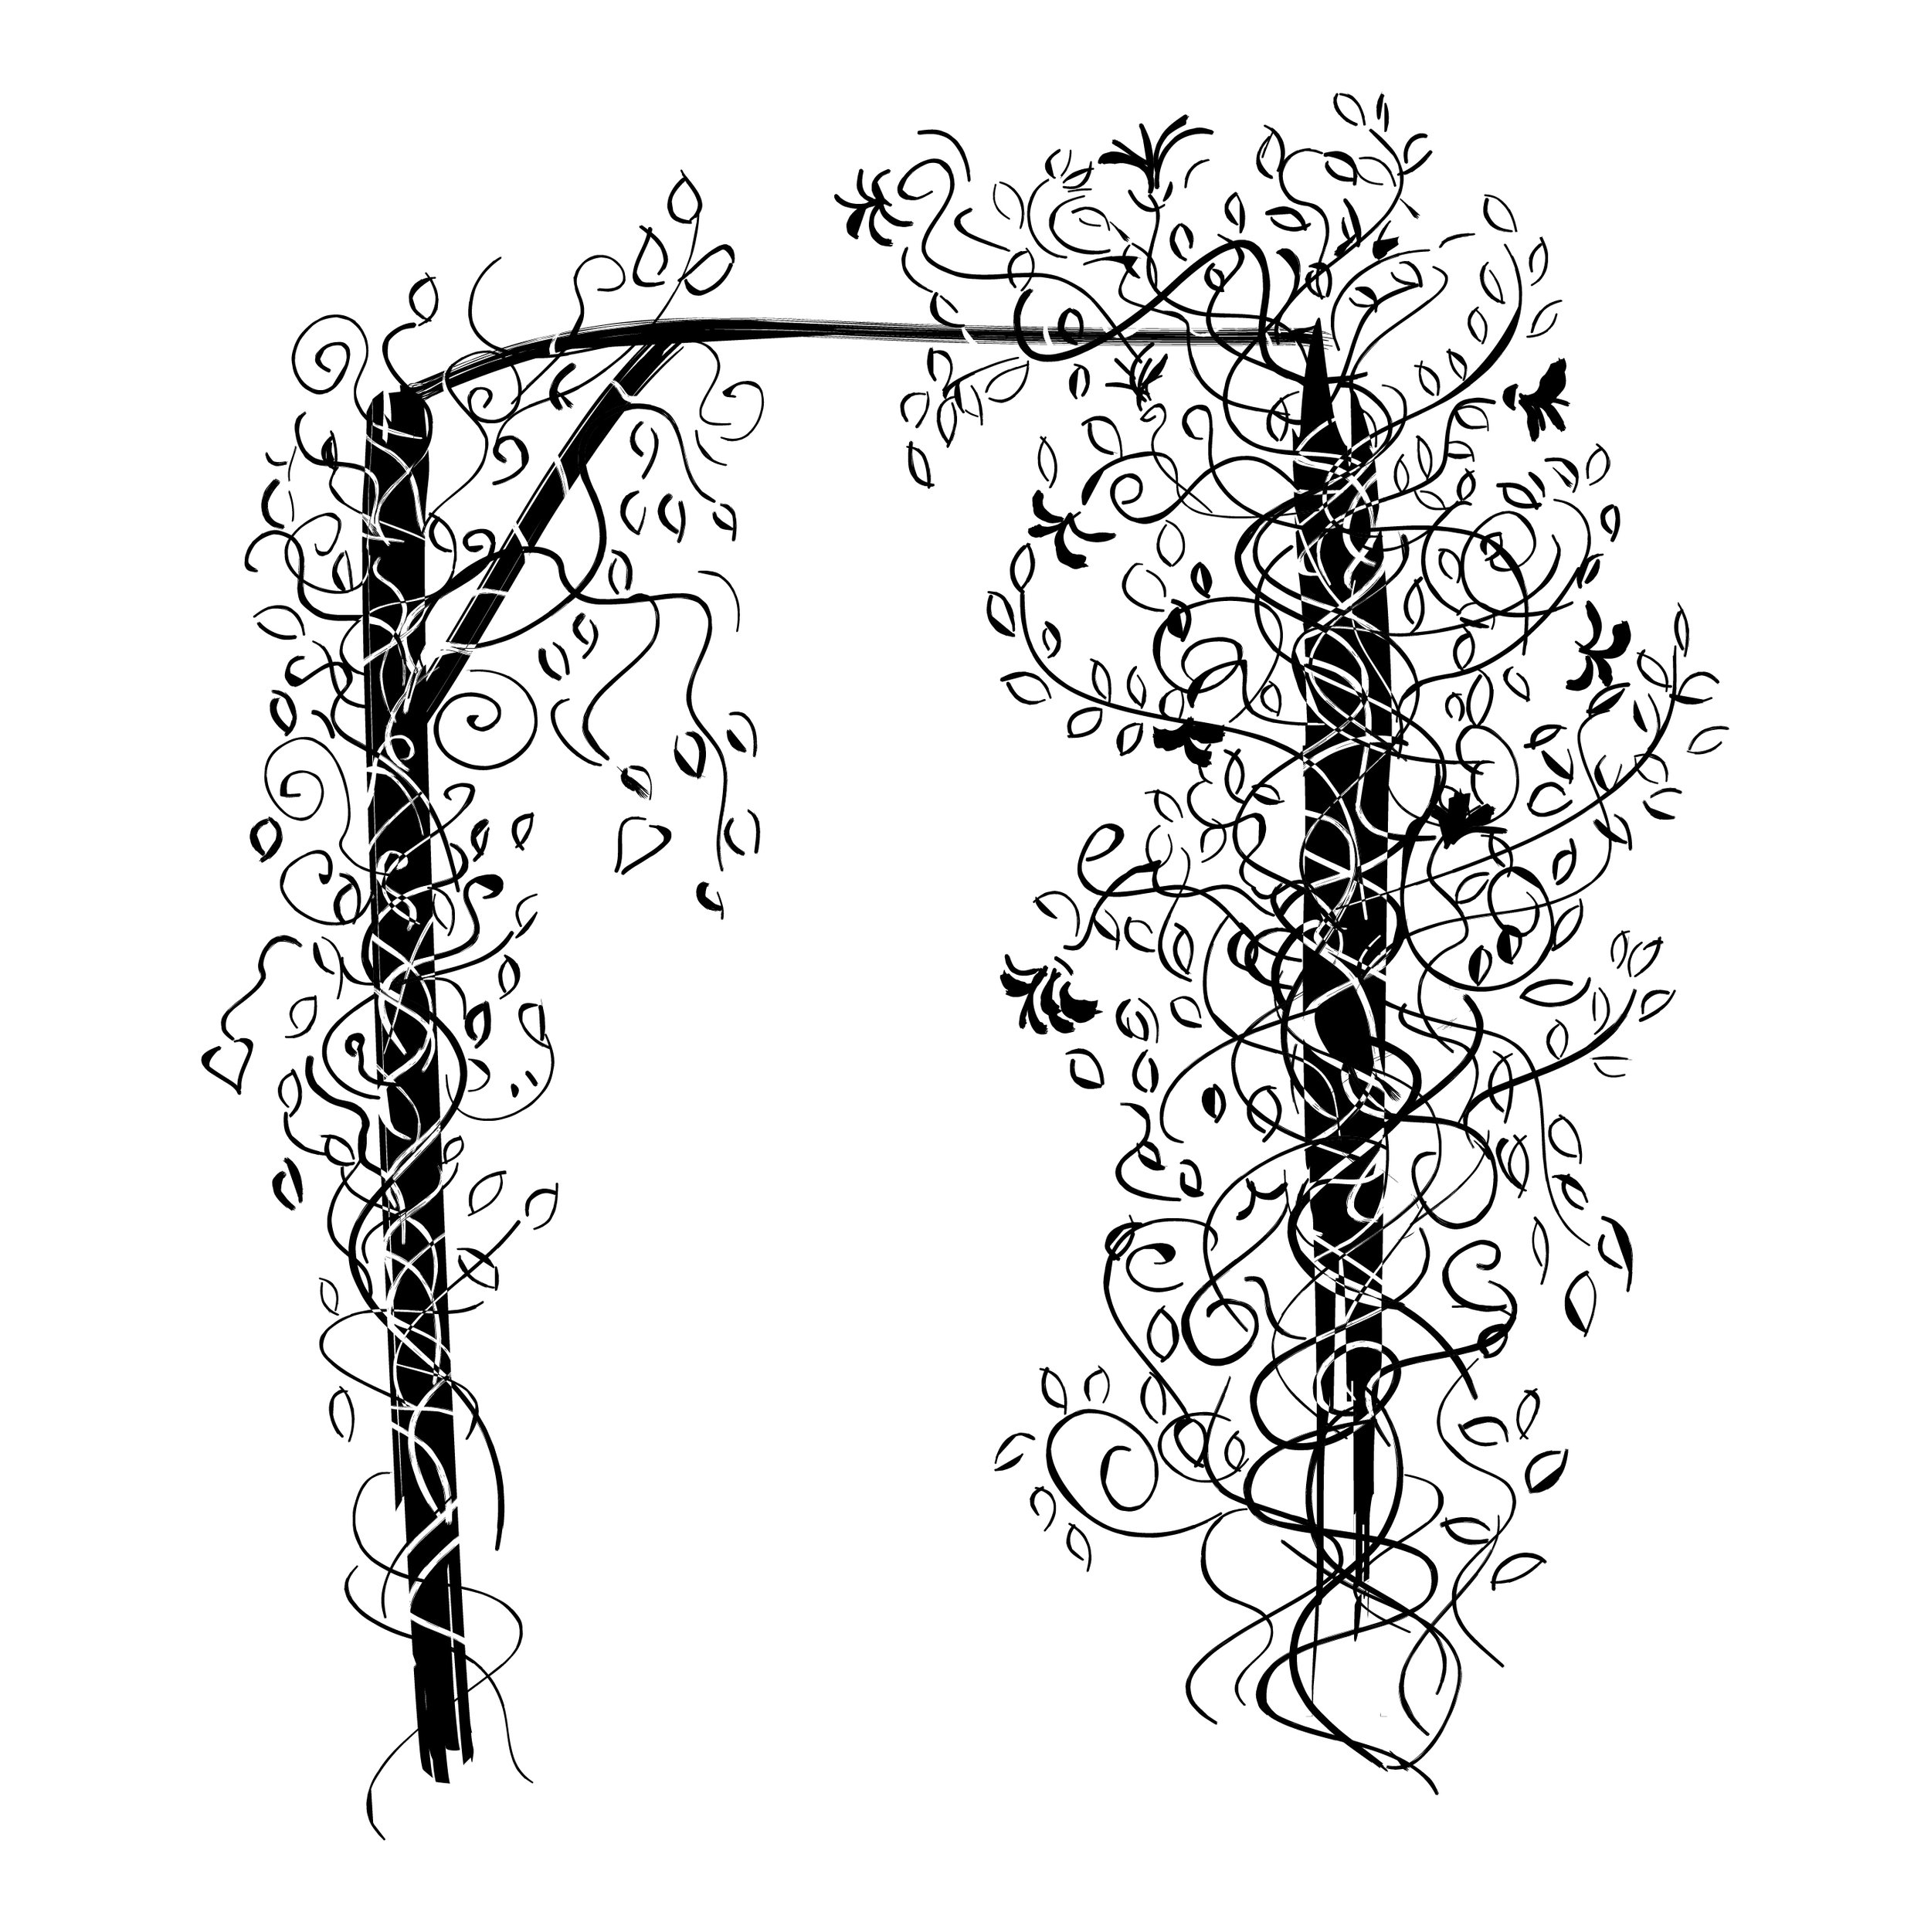 Line drawing of flowering vine on trellis